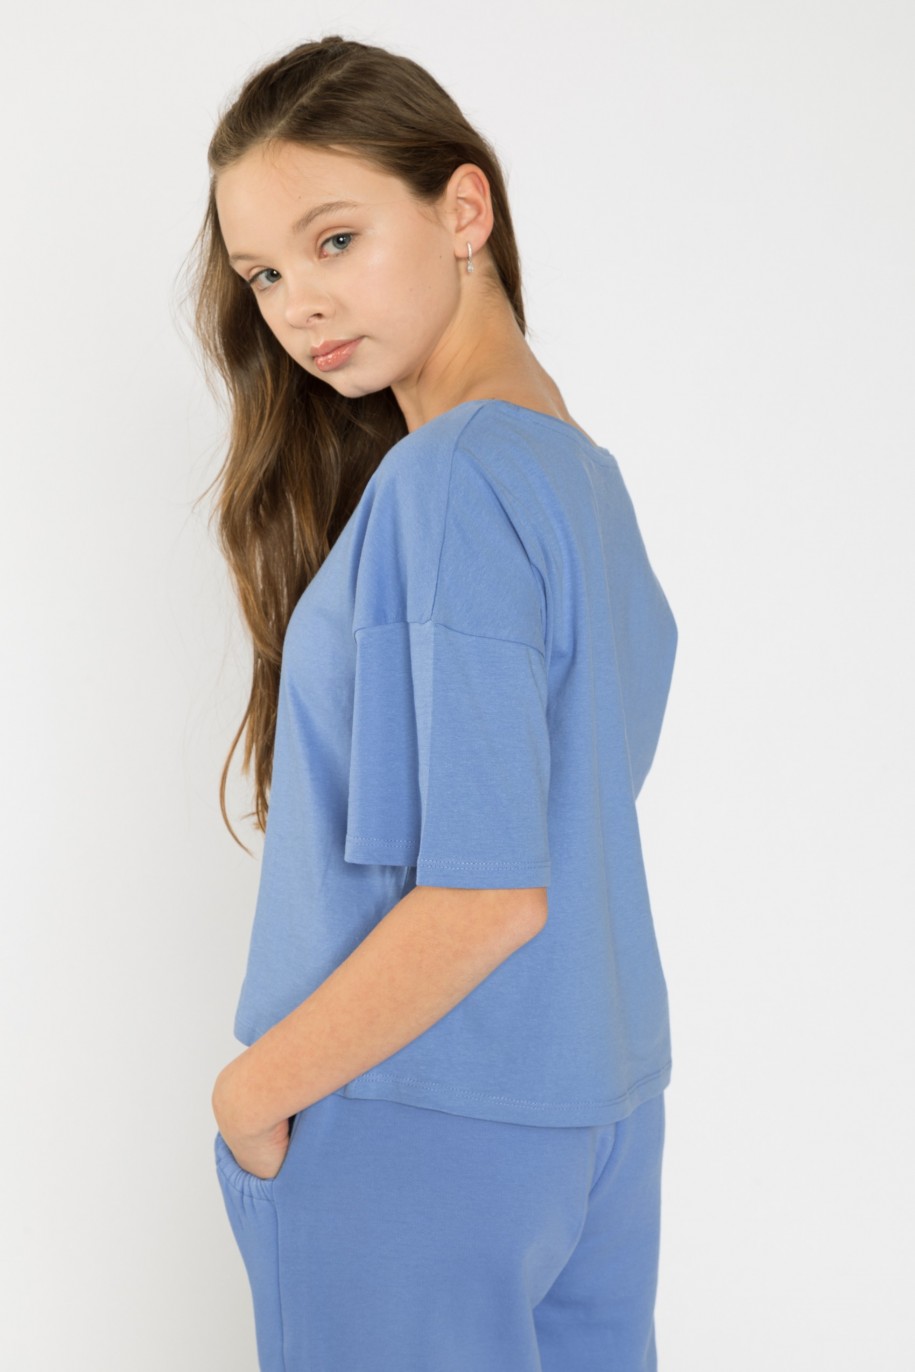 Niebieski t-shirt dla dziewczyny BUTTERFLY - 32528